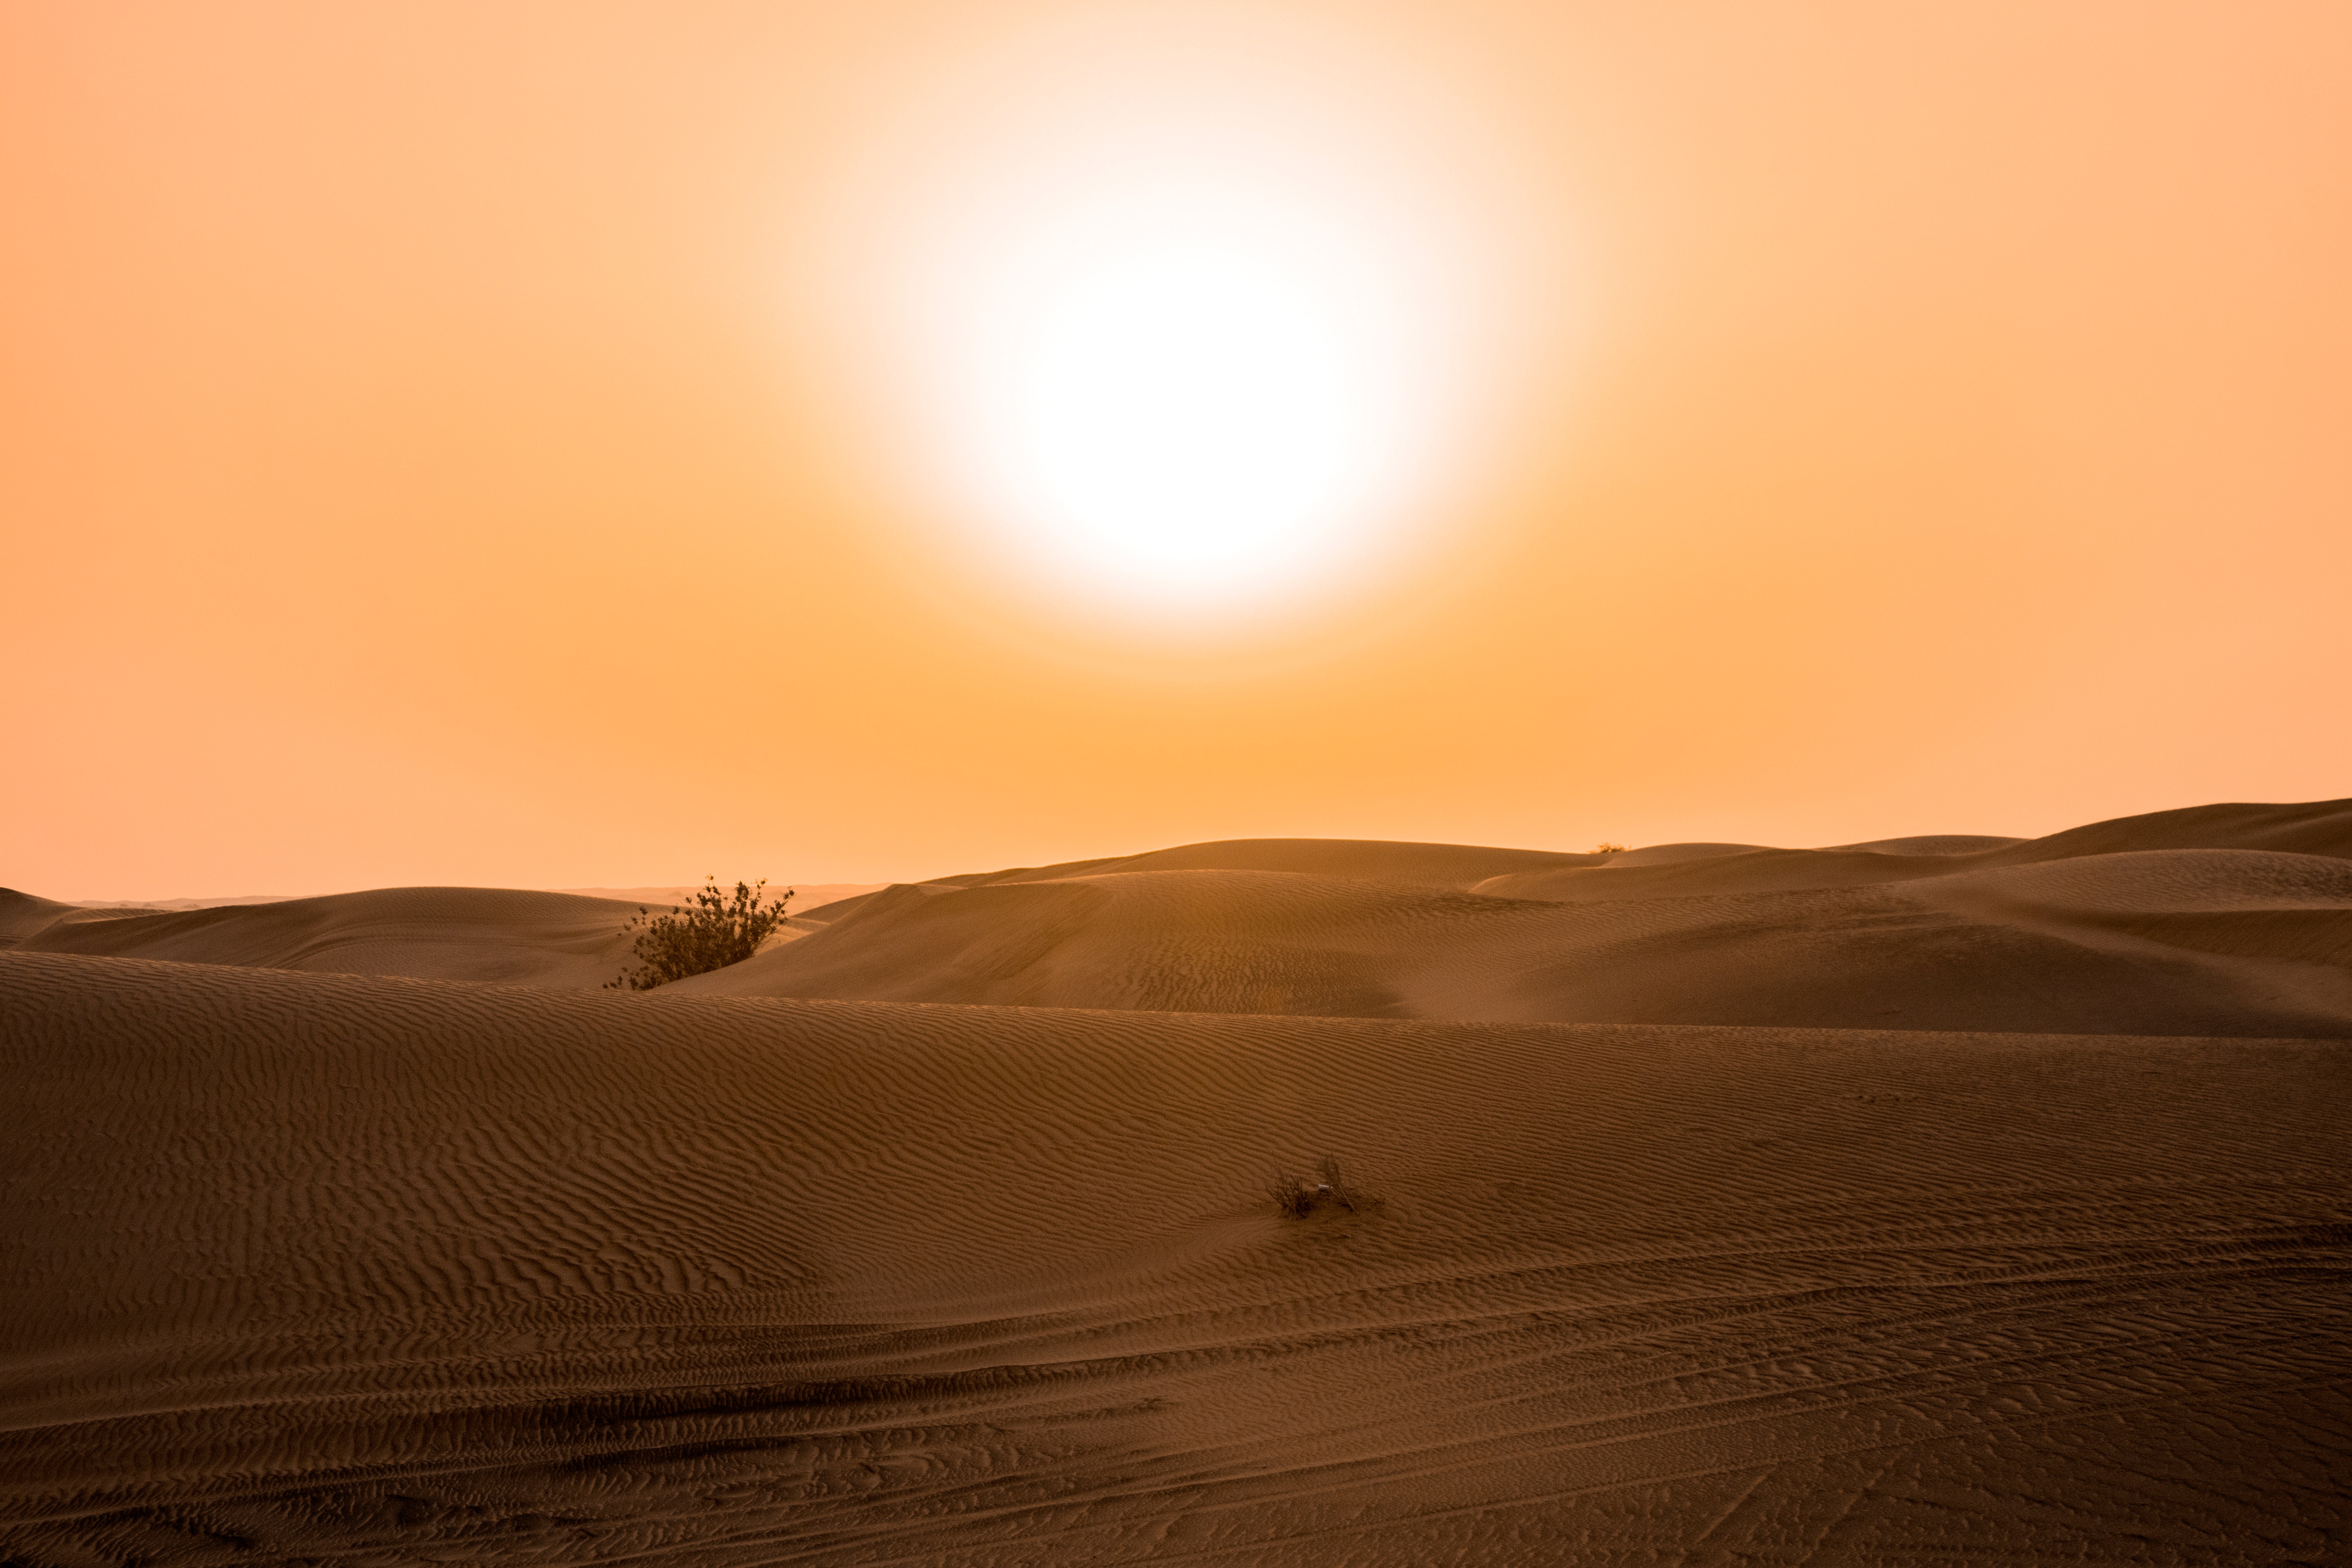 desert-under-yellow-sunset-712392.jpg